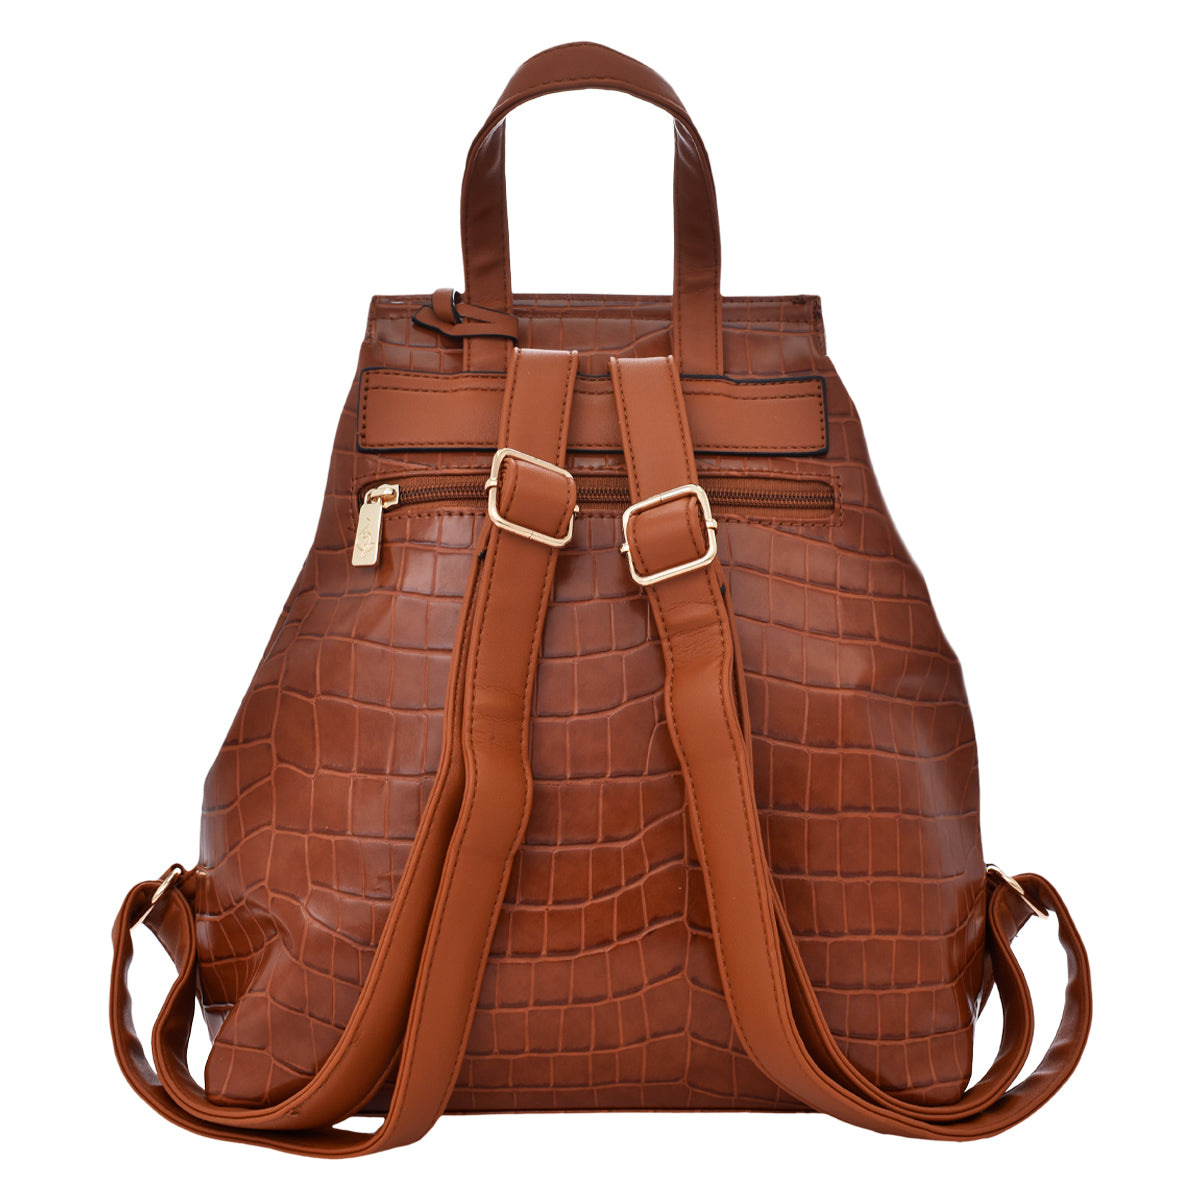 Backpack [Baby Phat] con estoperoles y diseño estilo animal print tipo piel de cocodrilo color camel